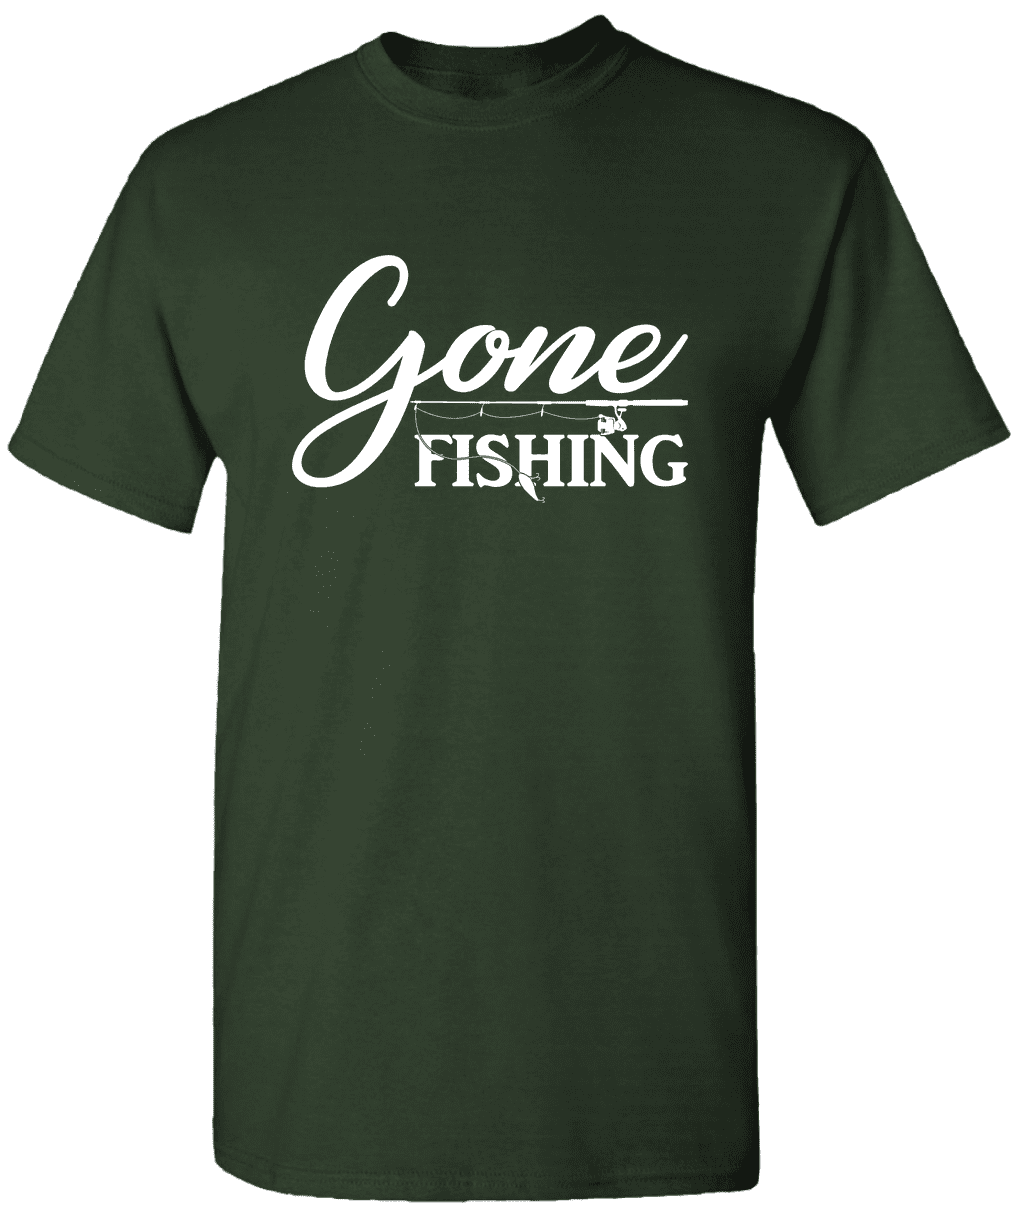 Gone Fishing - Light Blue - Fishing Shirts For Women – JOE'S Fishing Shirts